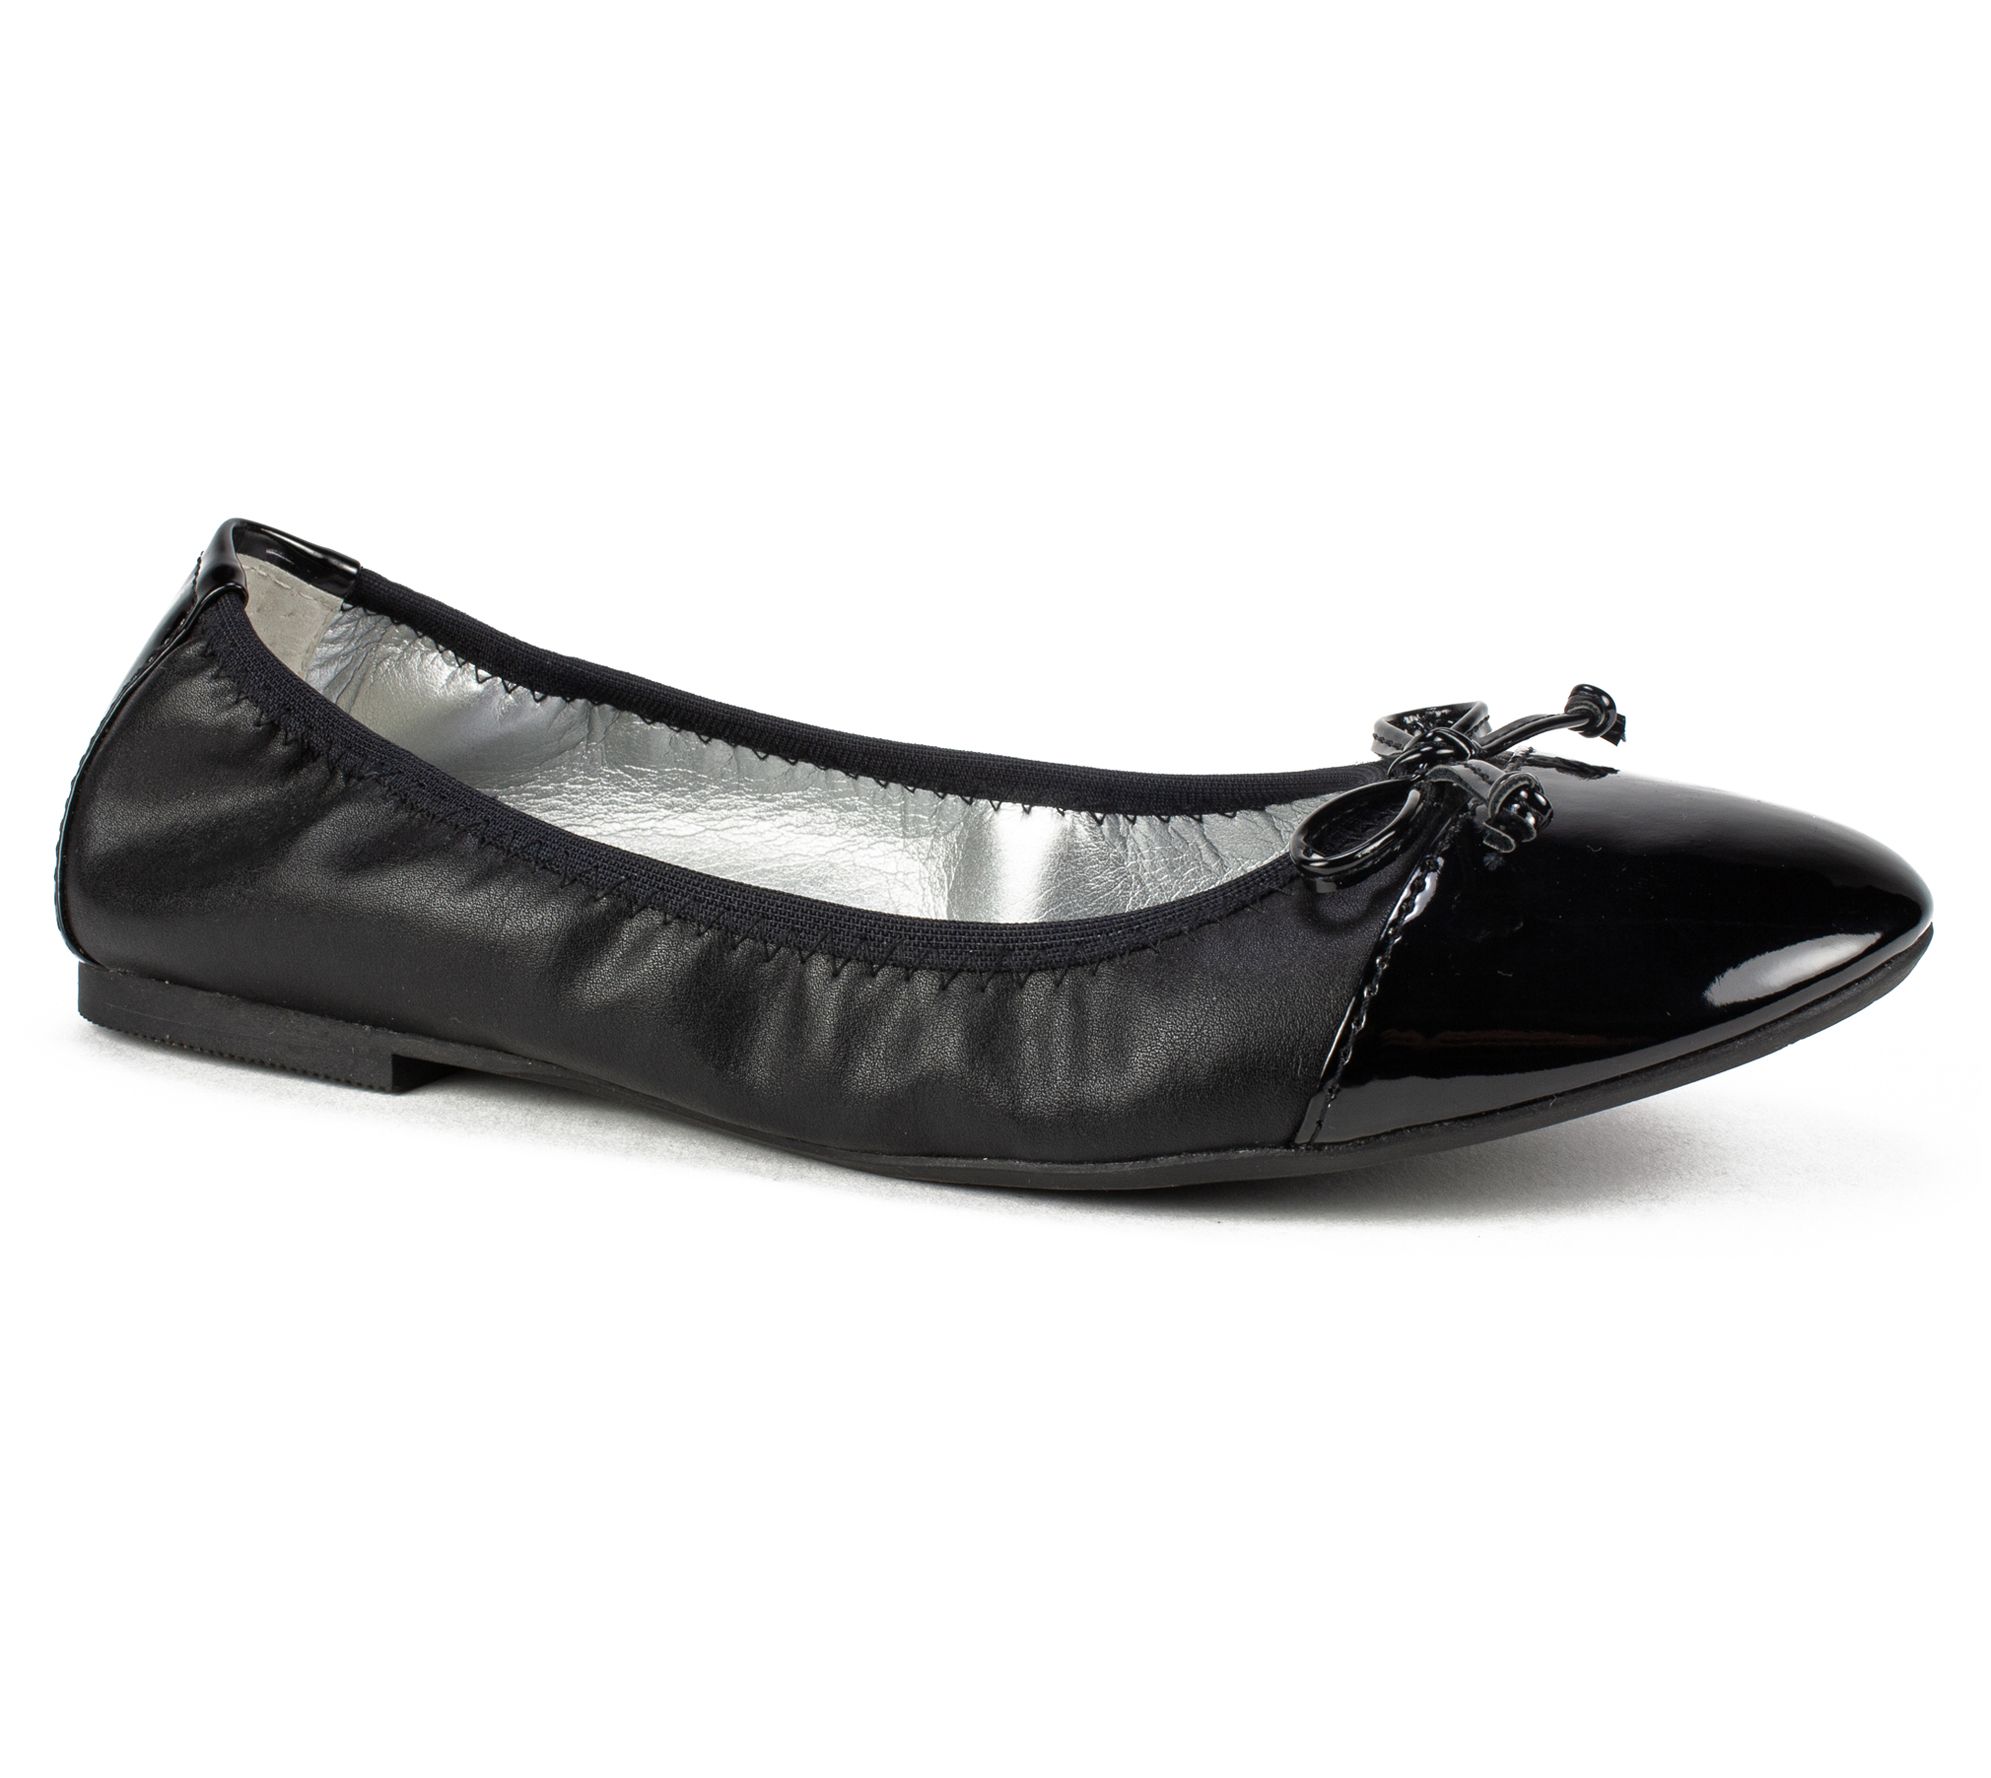 Women Rialto SUNNYSIDE II White-White Patent Slip-On Ballet Flat Shoes